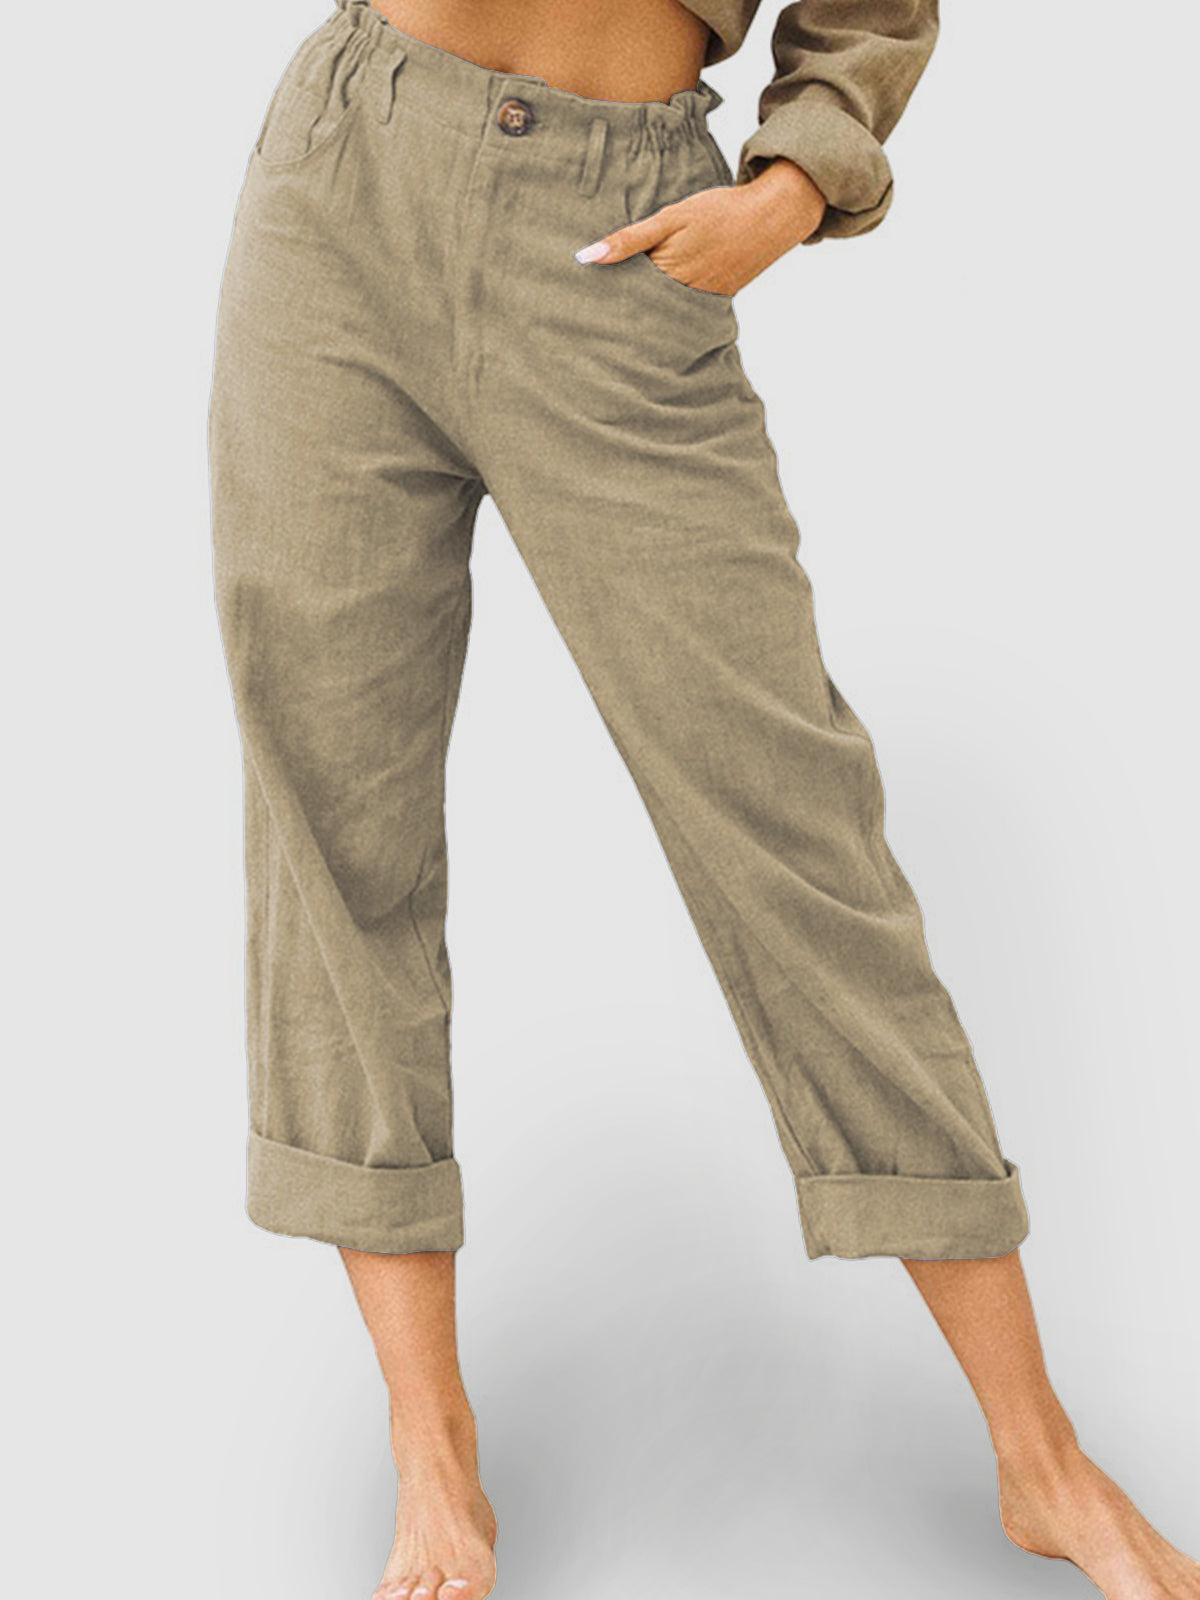 Cotton Linen Casual Stretch Pants - boddysize